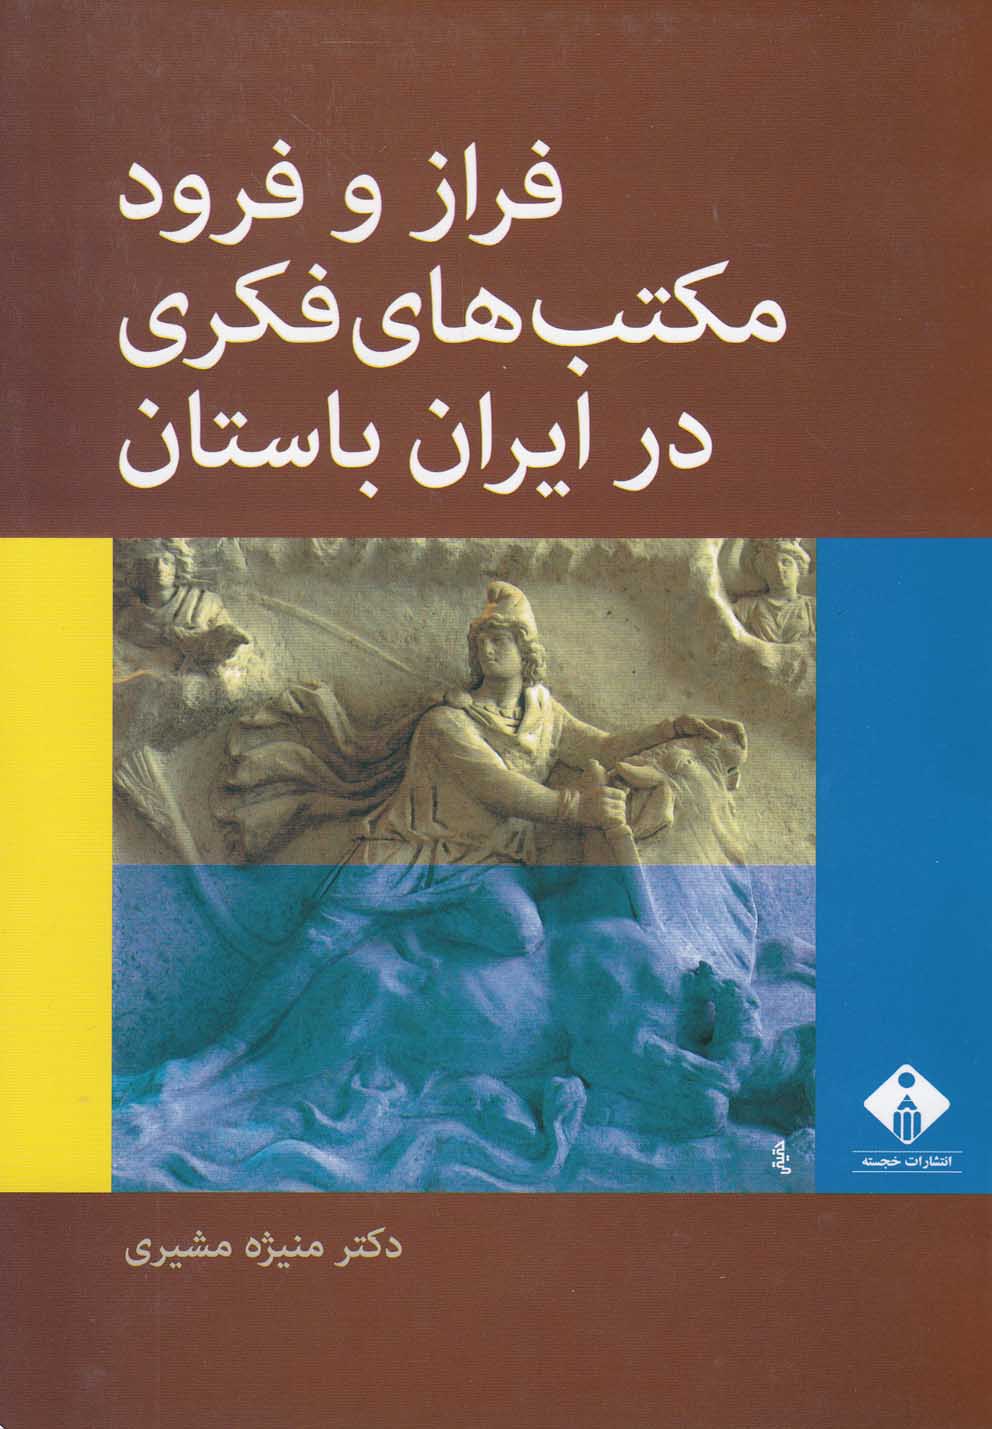  کتاب فراز و فرود مکتب های فکری در ایران باستان